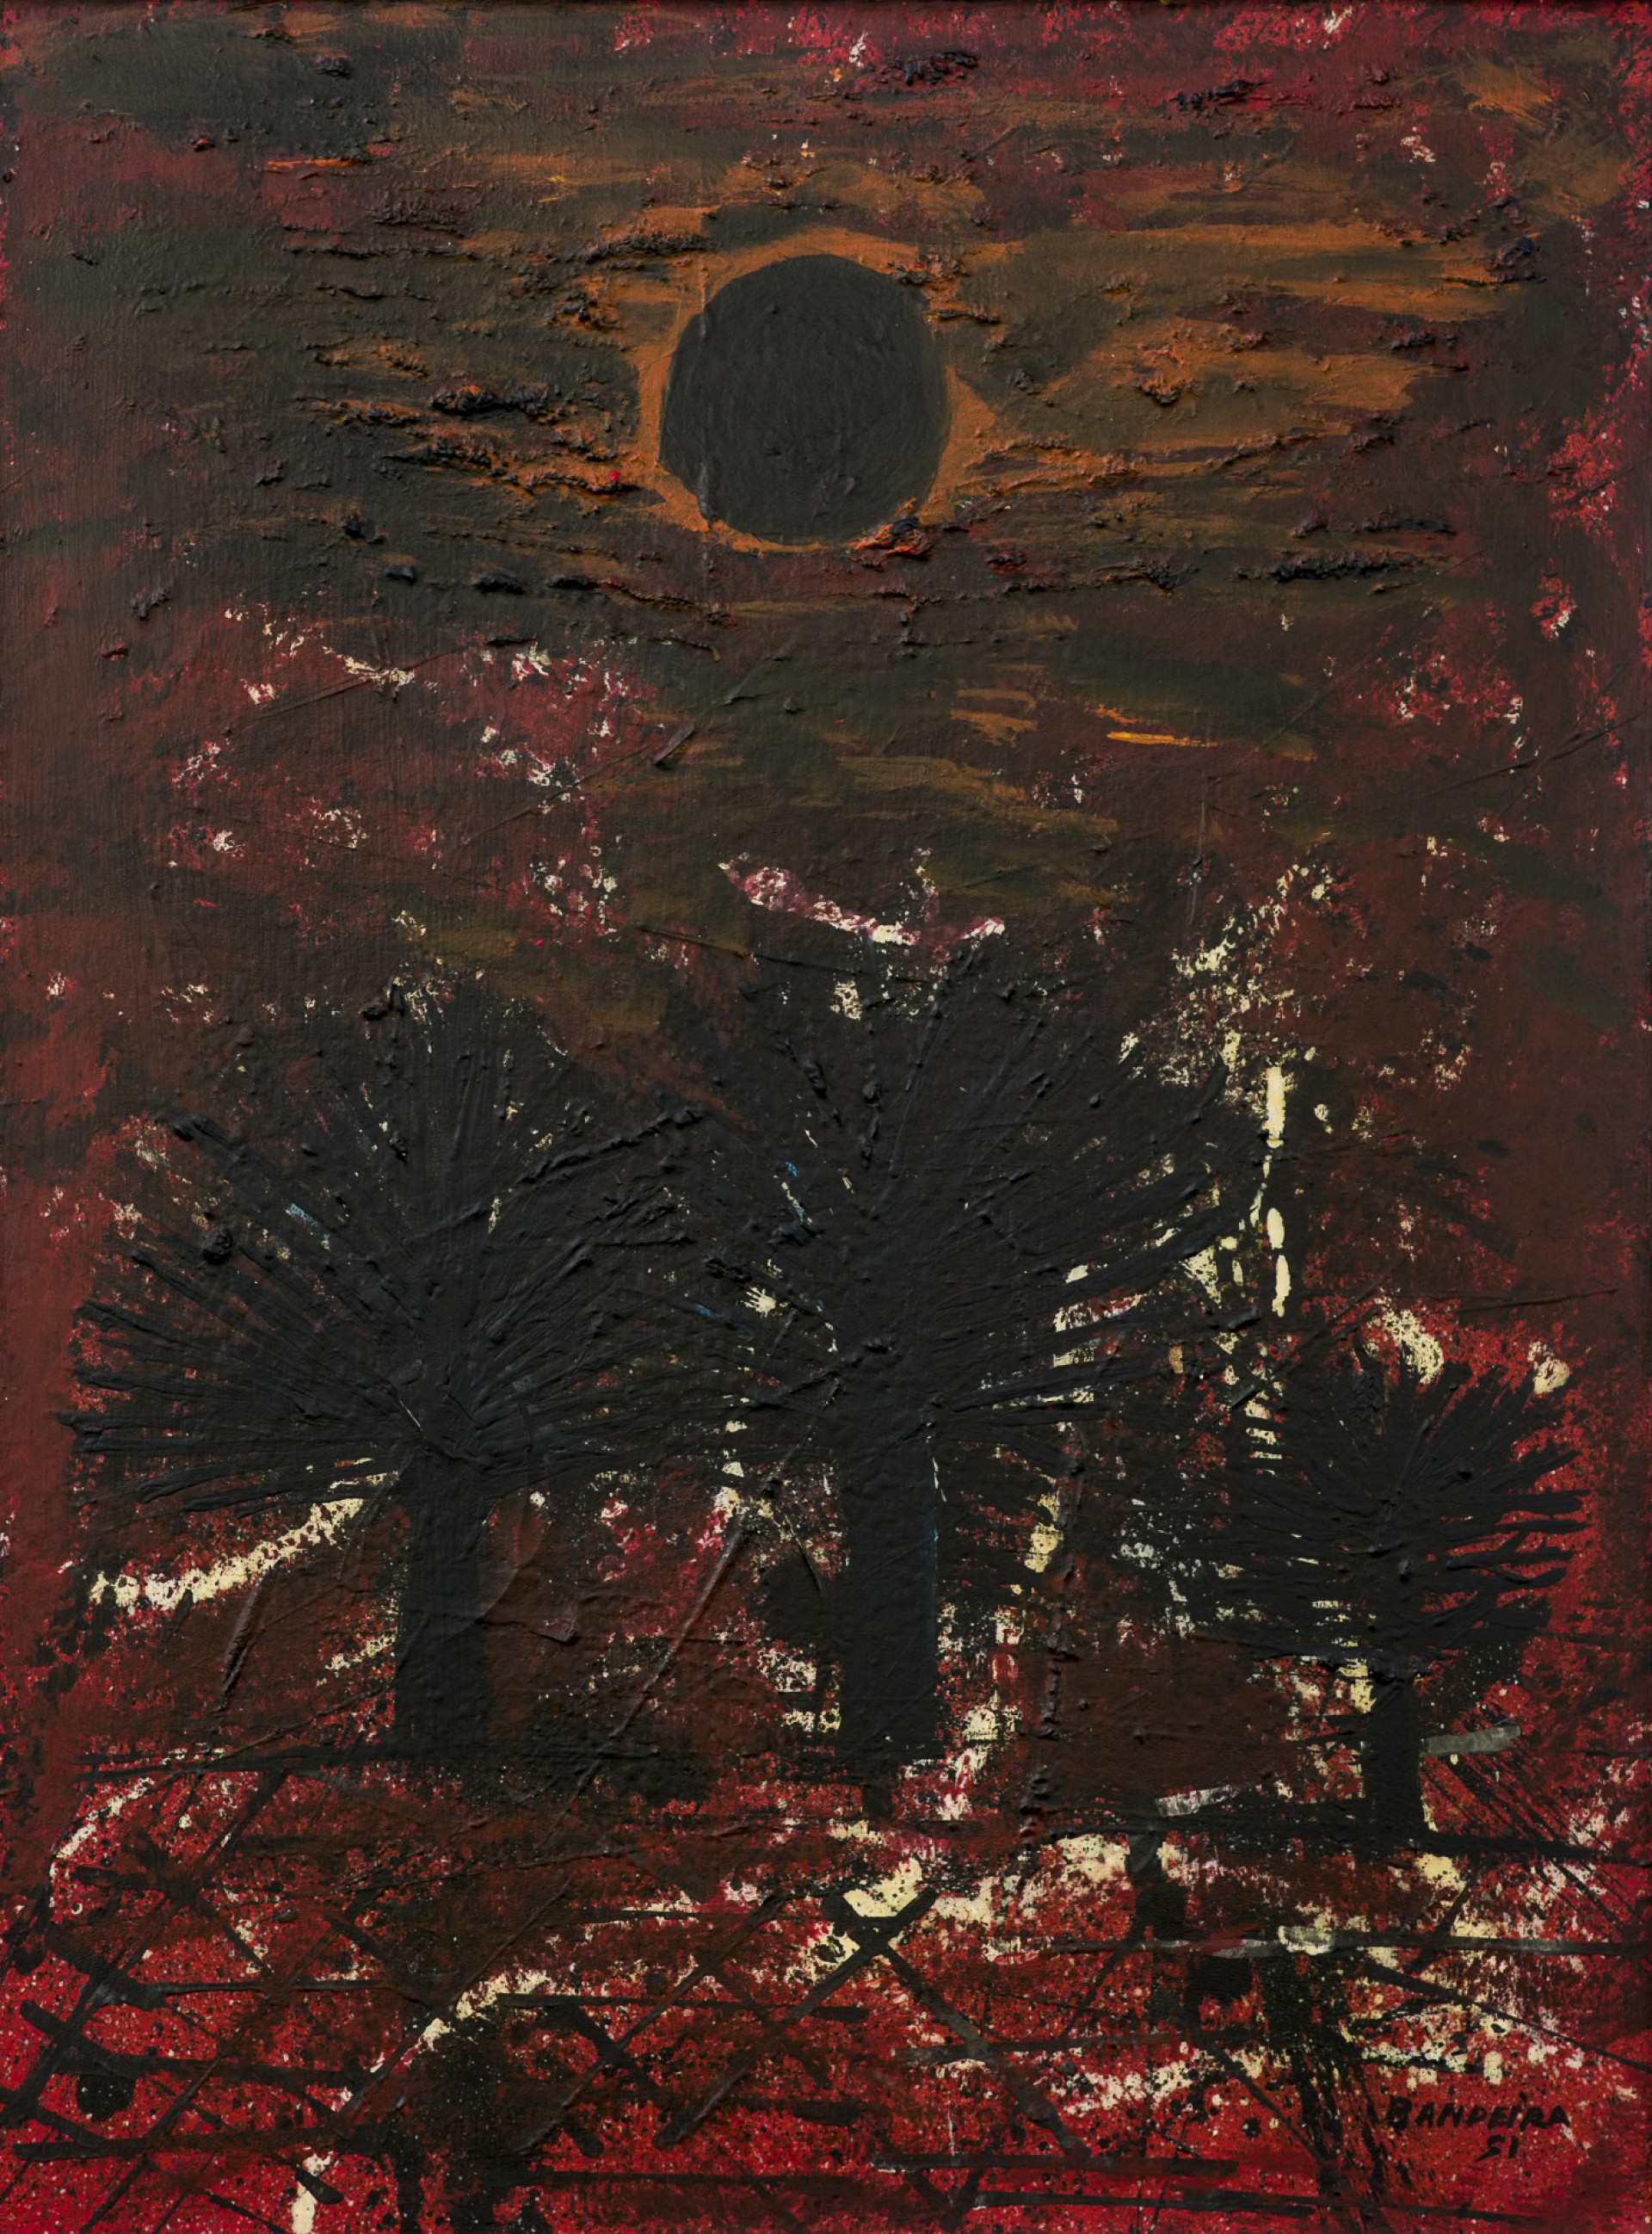 Obra "Floresta de Carnaúba", 64 X 54 cm, óleo sobre tela (1951)(Foto: Reprodução)